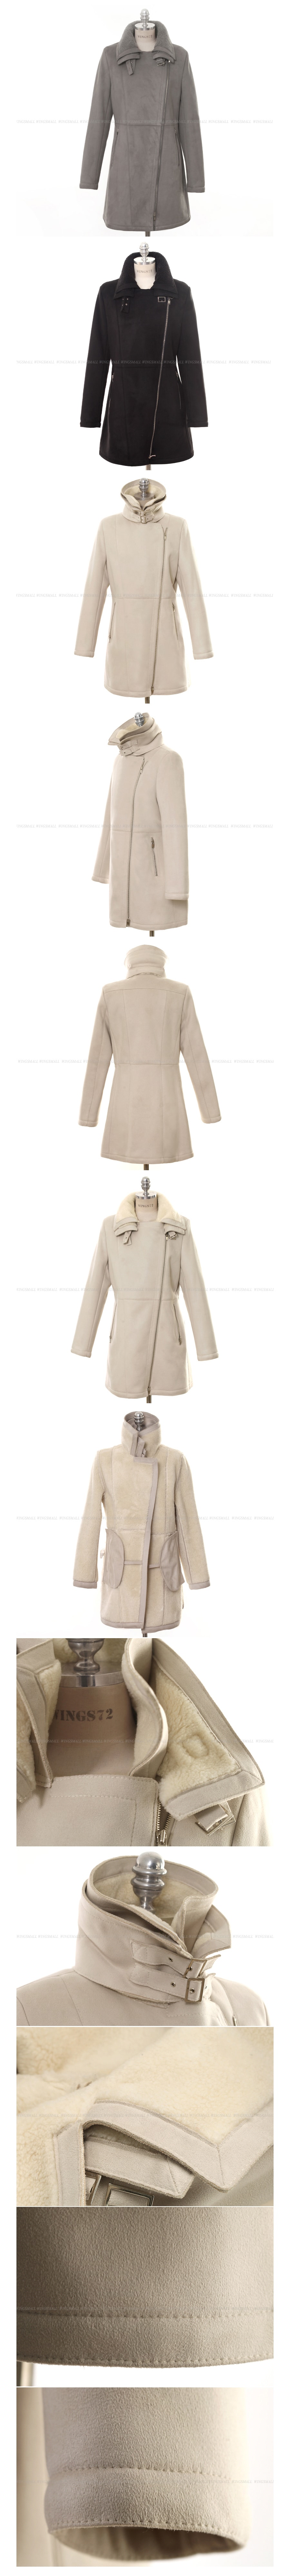 KOREA Double Collar Faux Shearling Coat Grey (M-Size) [Free Shipping]